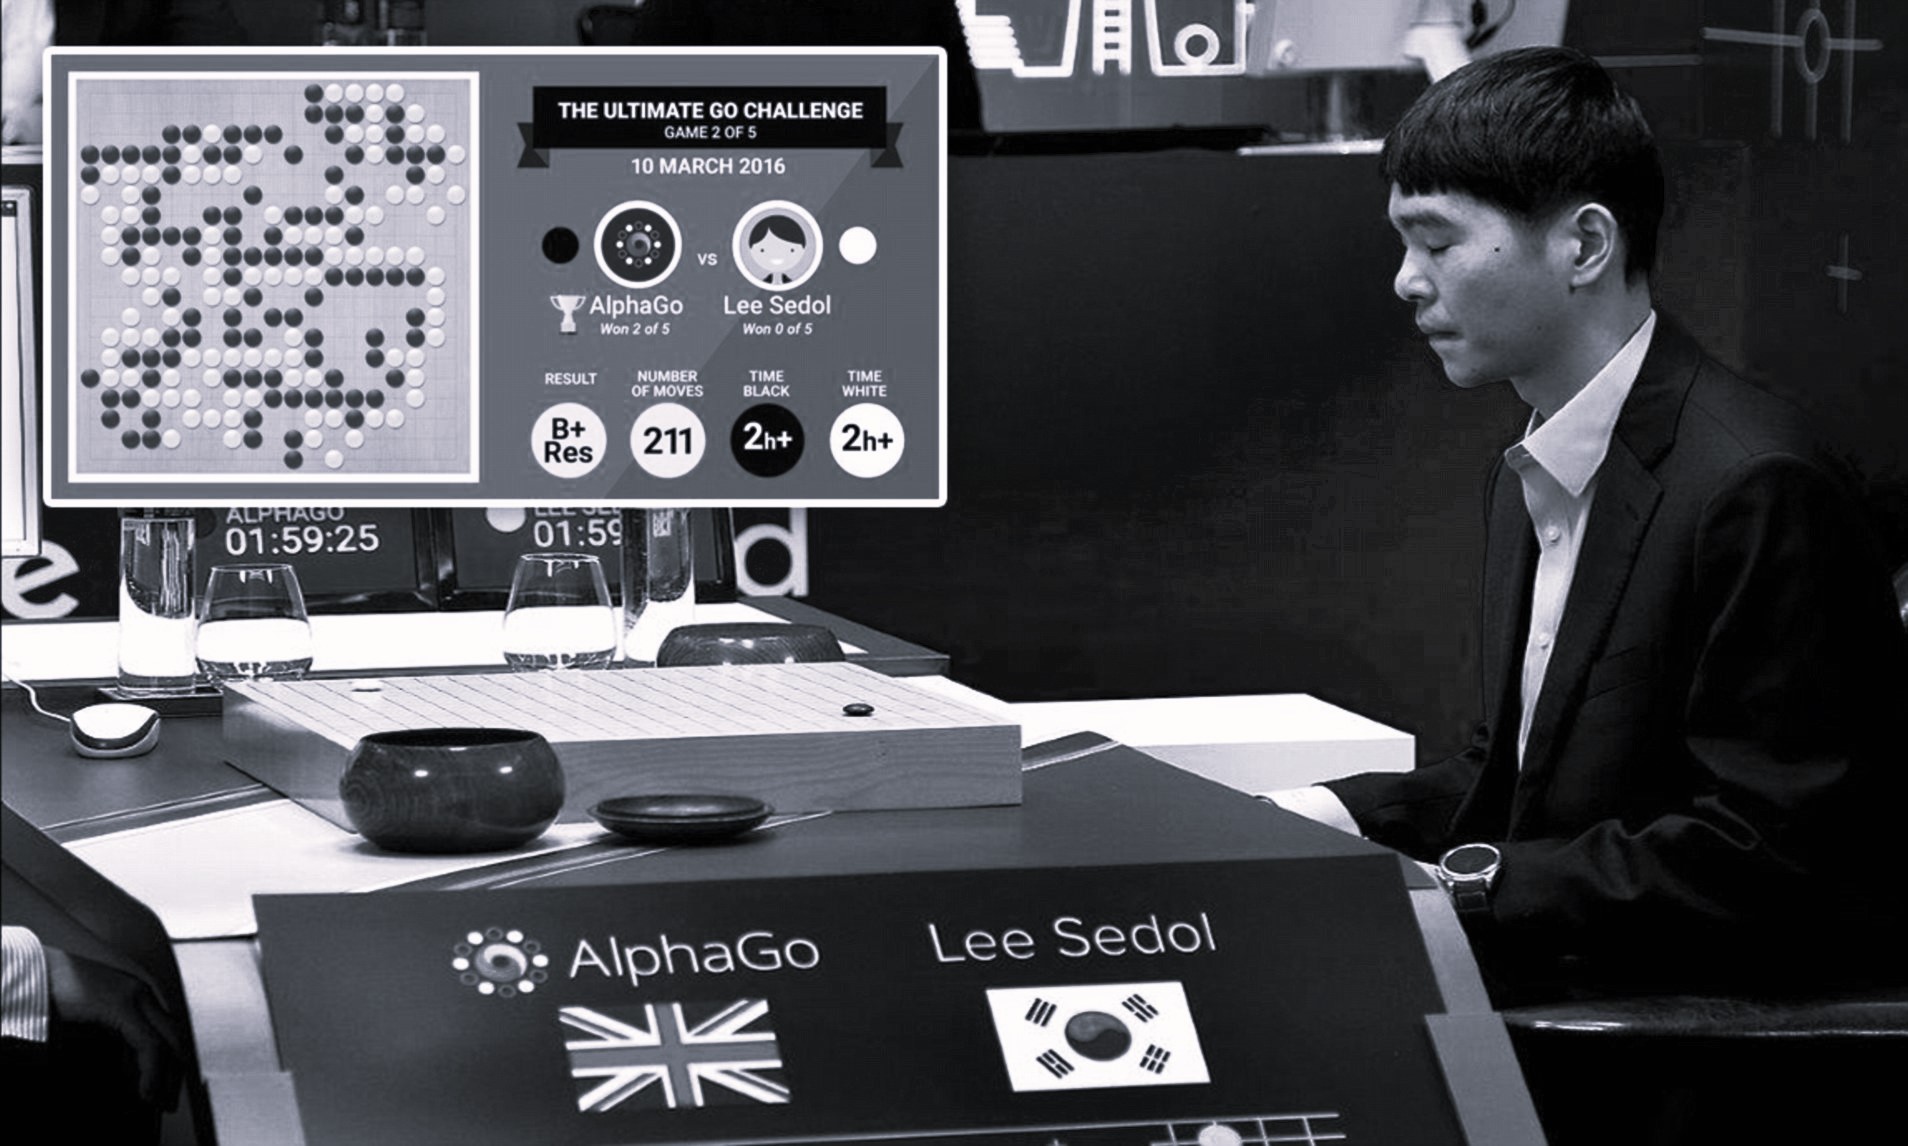 Στιγμιότυπο από το αγώνα γκο του Λη Σεντόλ εναντίον του AlphaGo